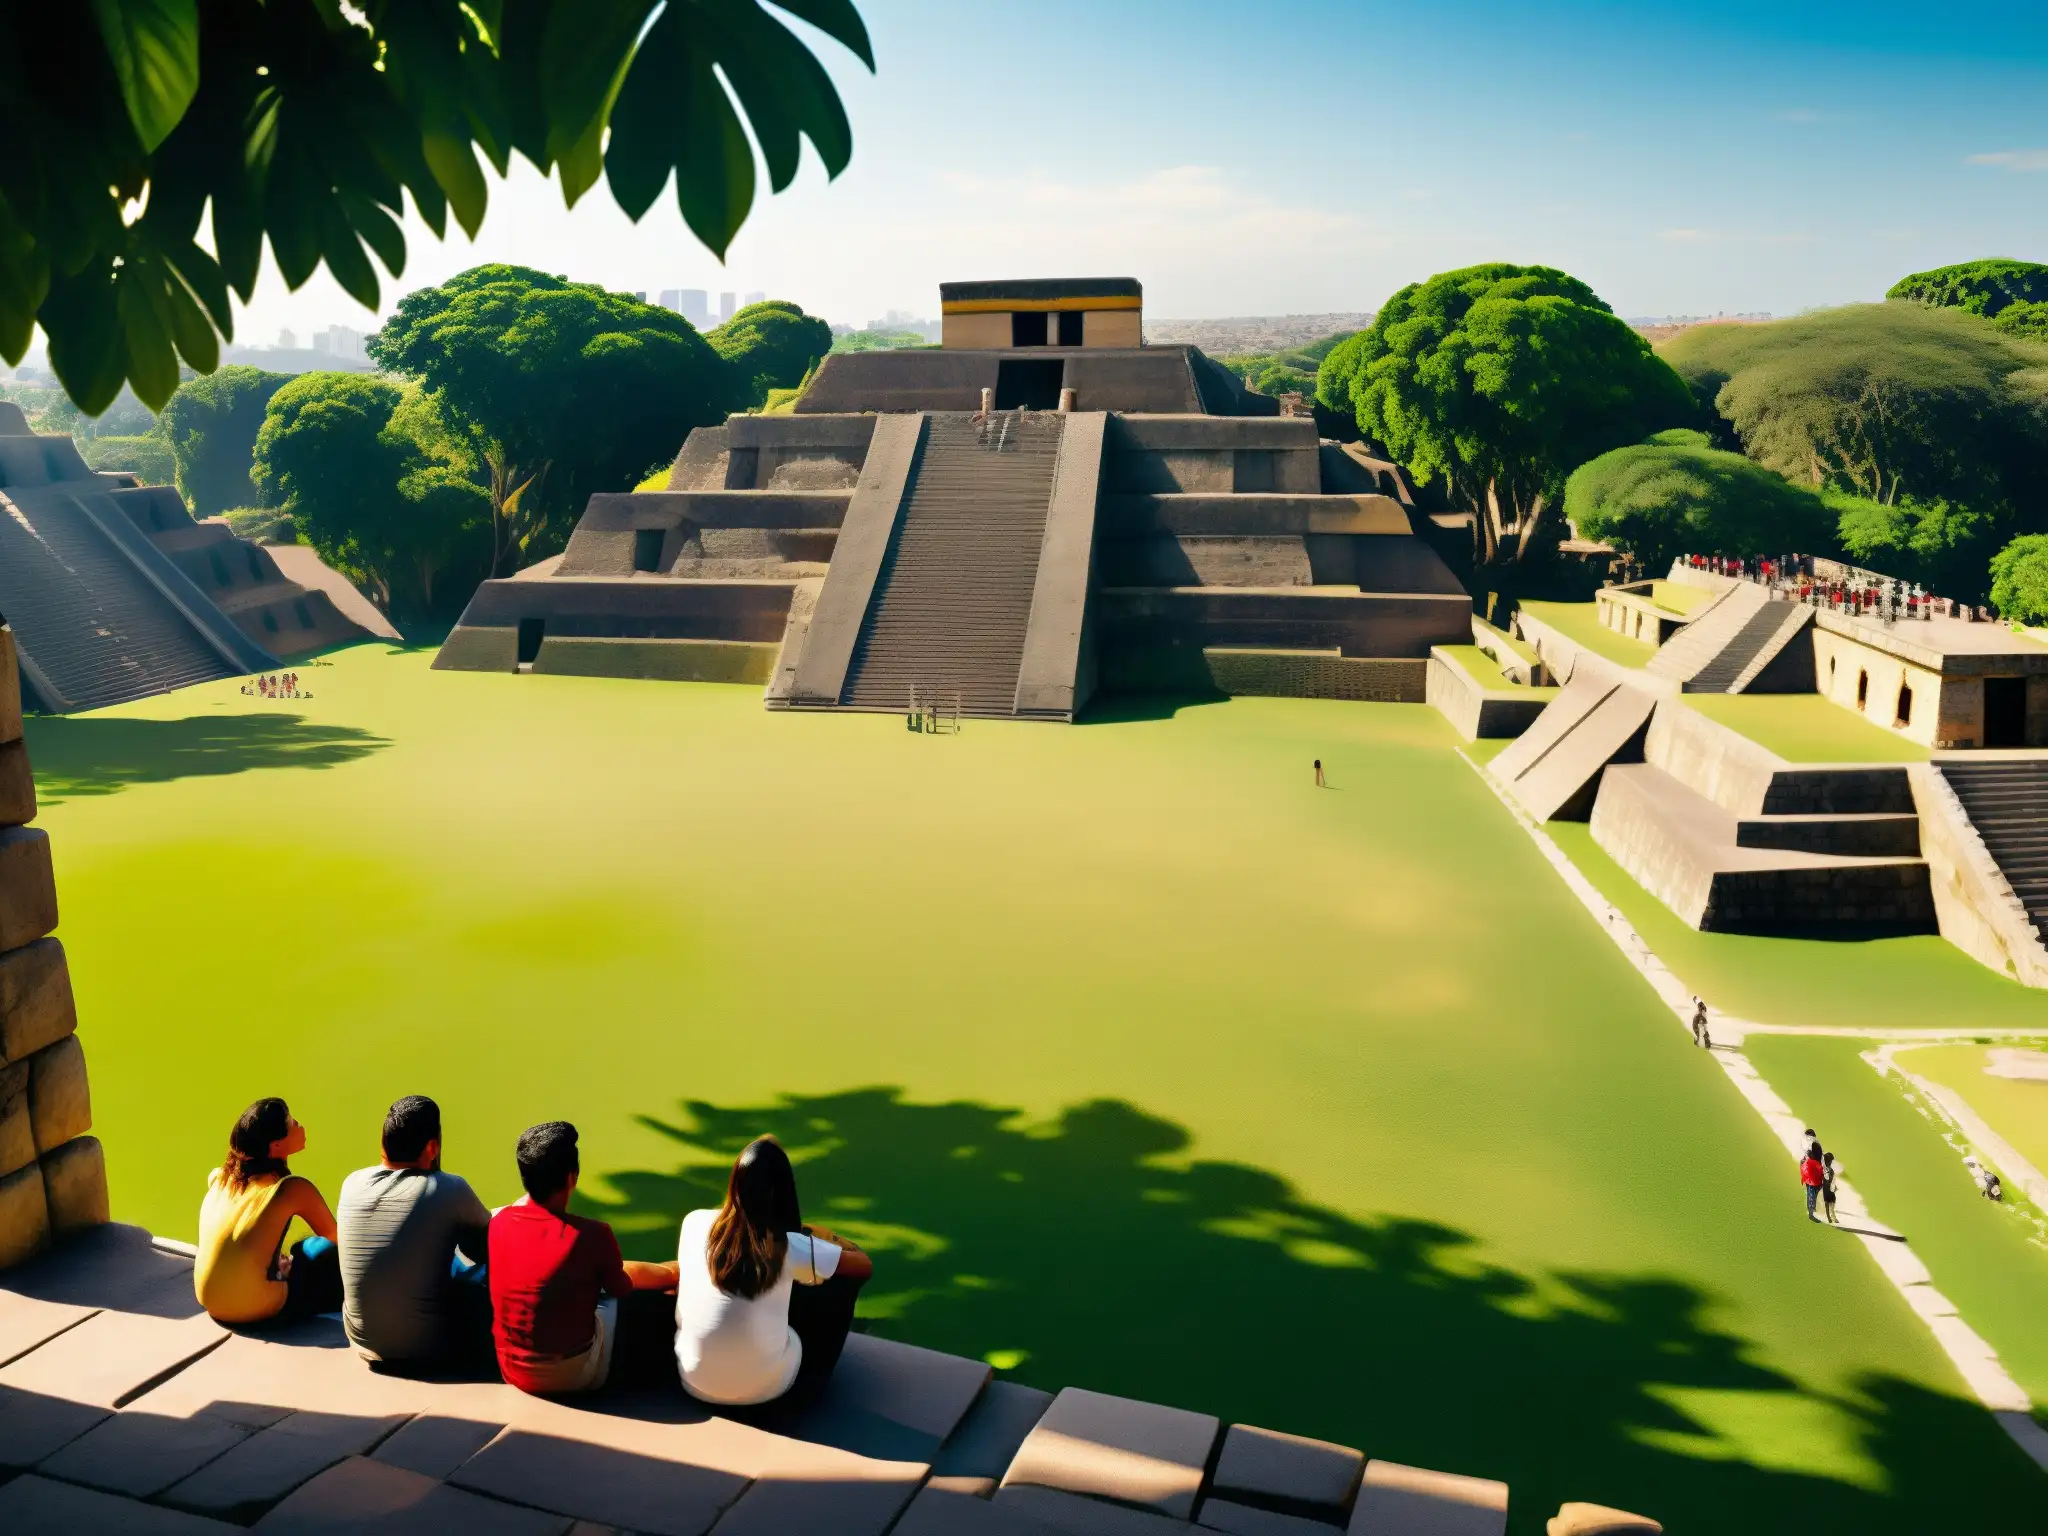 Ruinas de Tenochtitlan con templos aztecas rodeados de vegetación exuberante